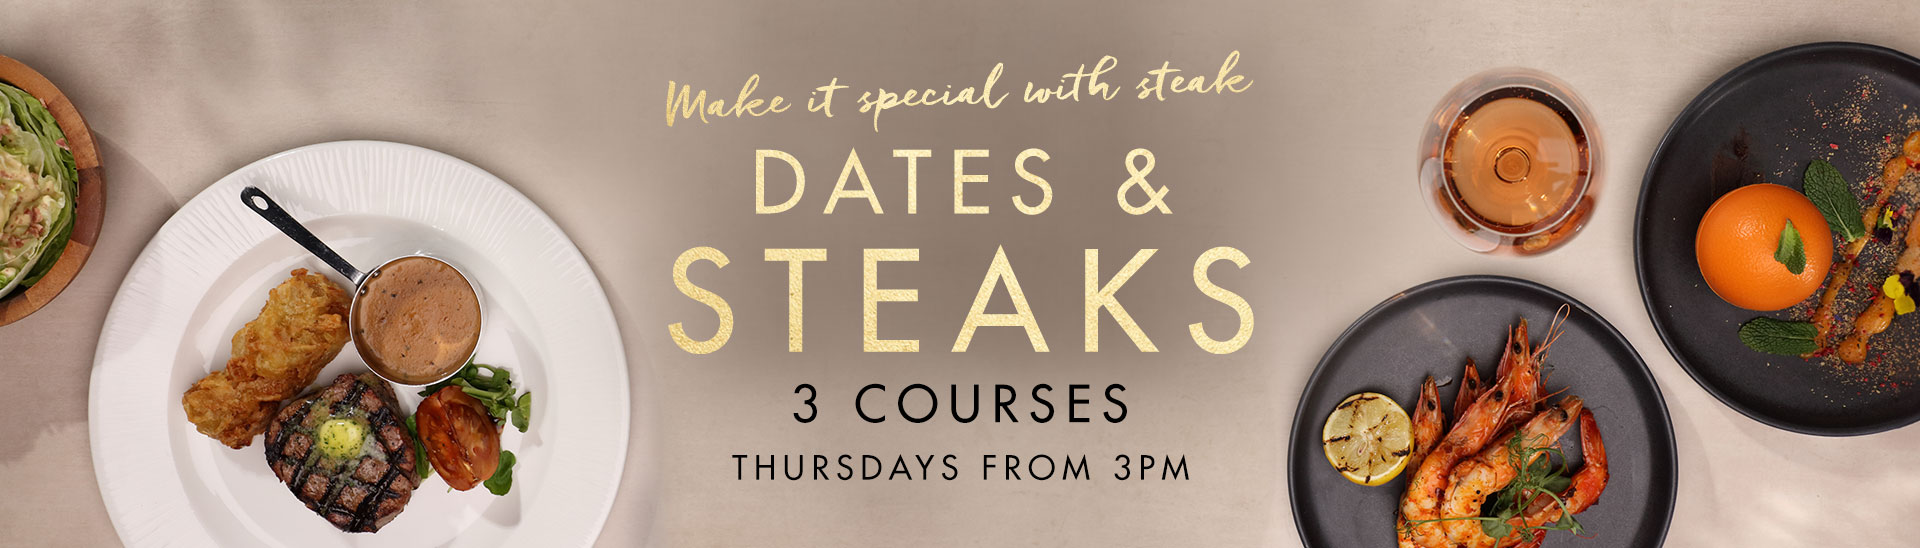 Dates & Steaks at Miller & Carter Gosforth Park